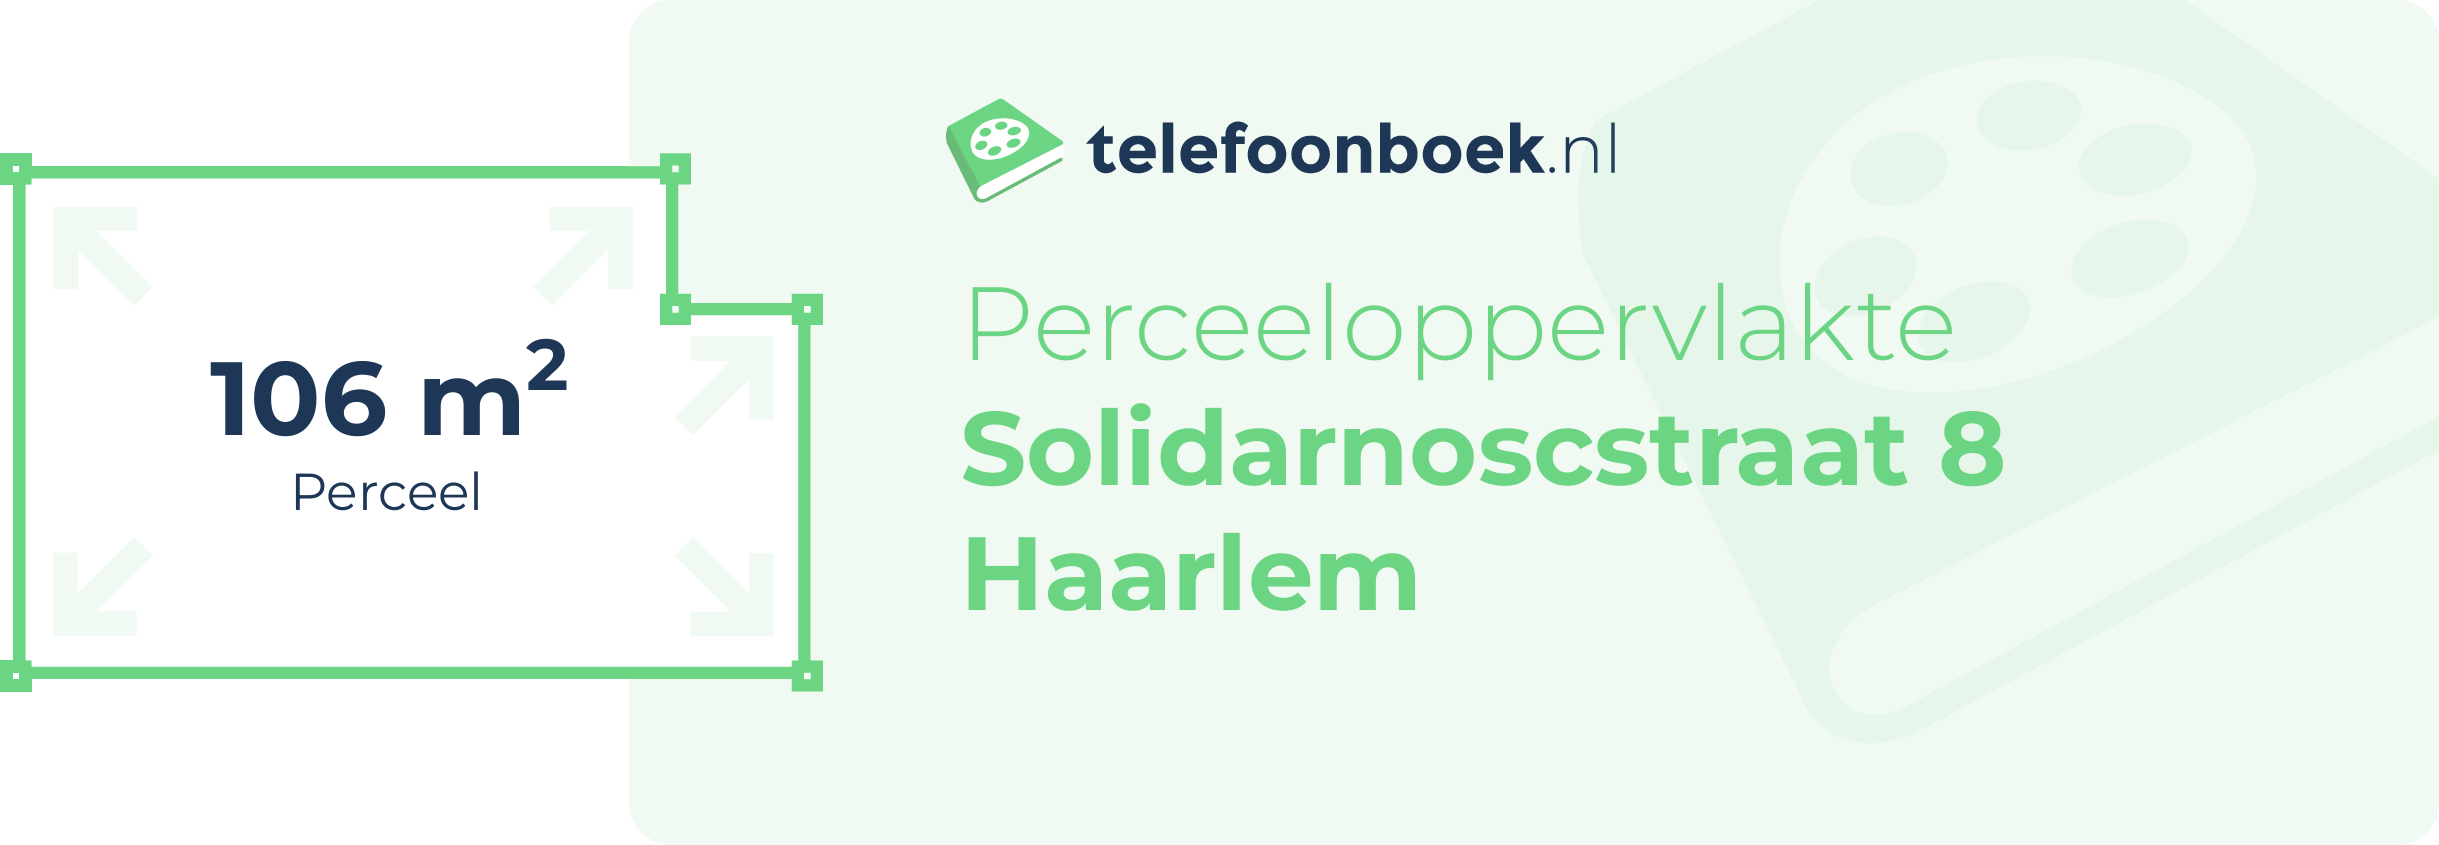 Perceeloppervlakte Solidarnoscstraat 8 Haarlem